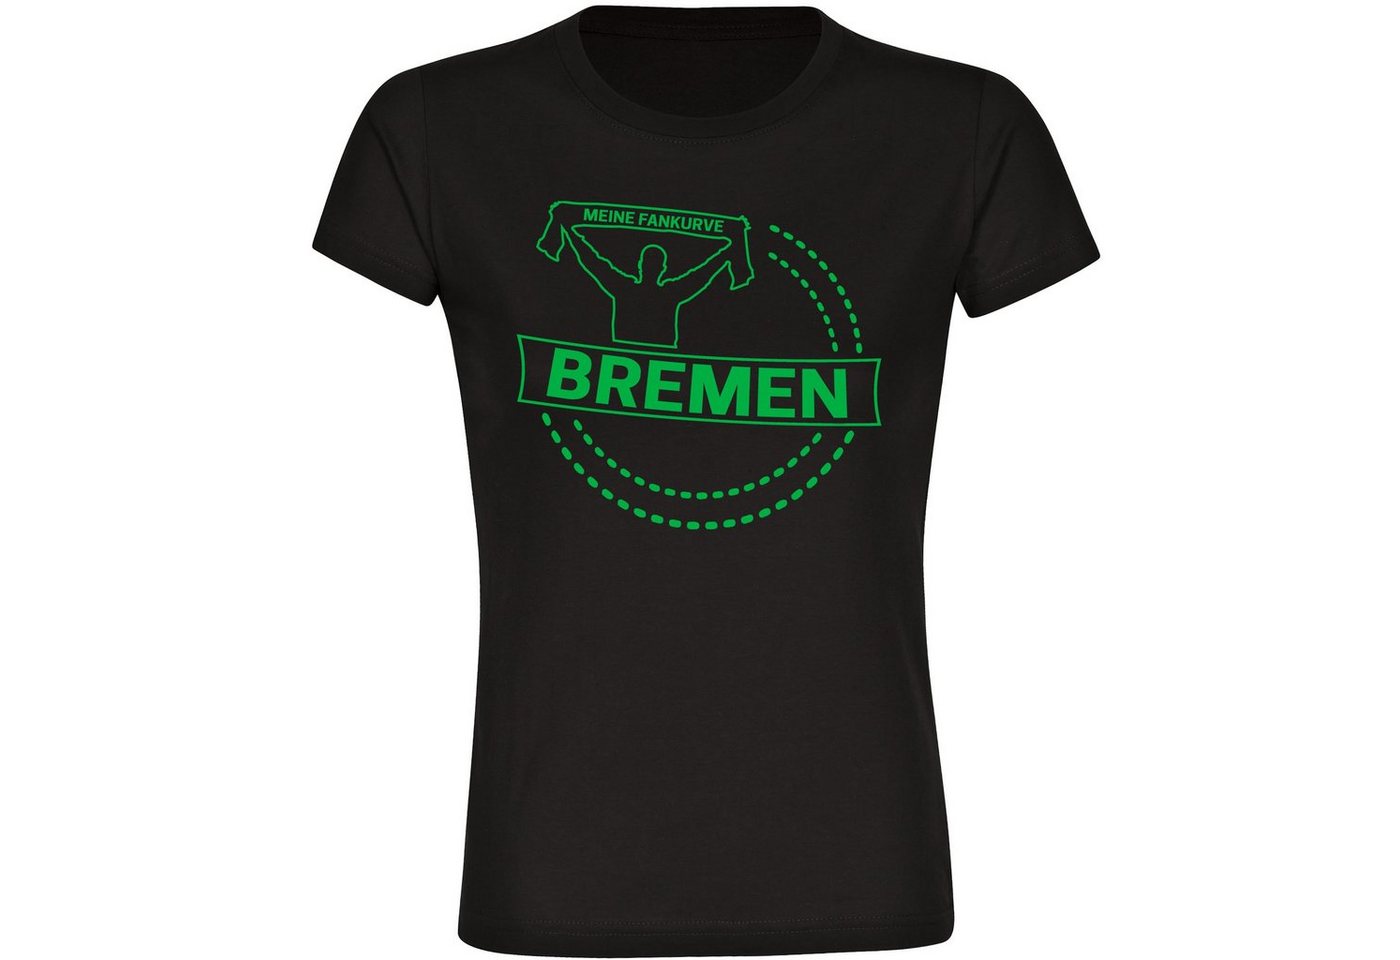 multifanshop T-Shirt Damen Bremen - Meine Fankurve - Frauen von multifanshop